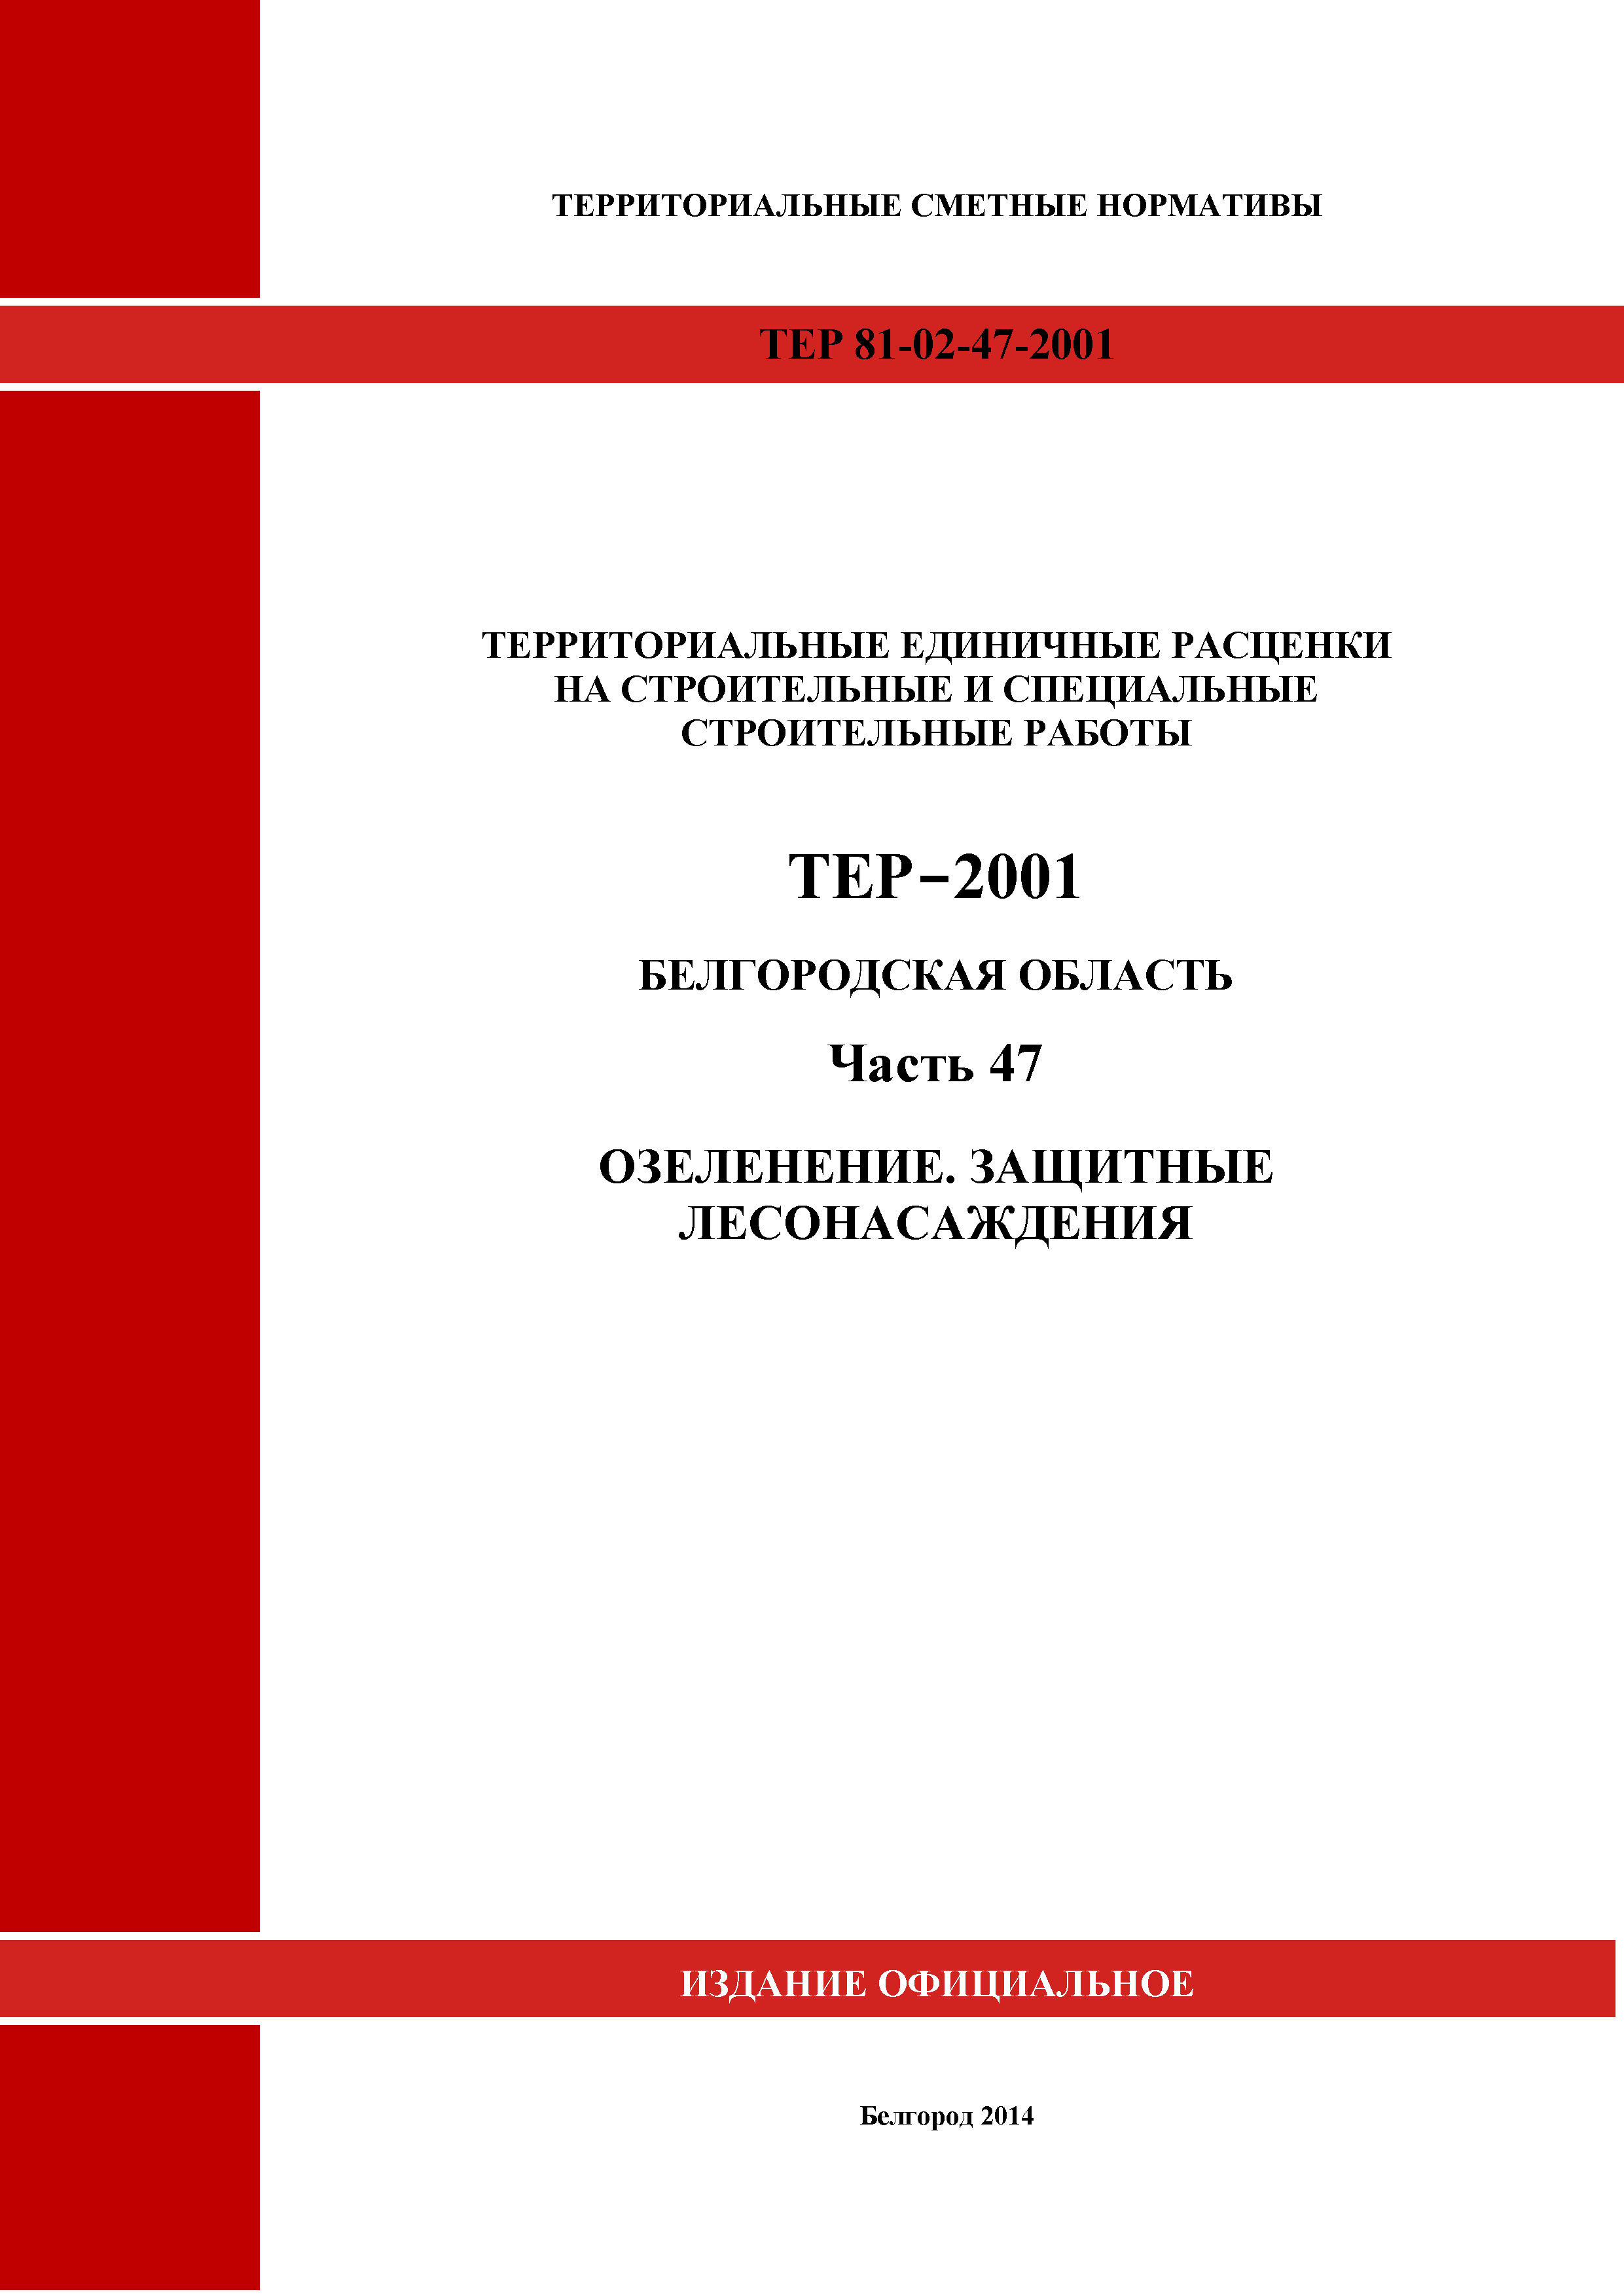 ТЕР Белгородская область 81-02-47-2001